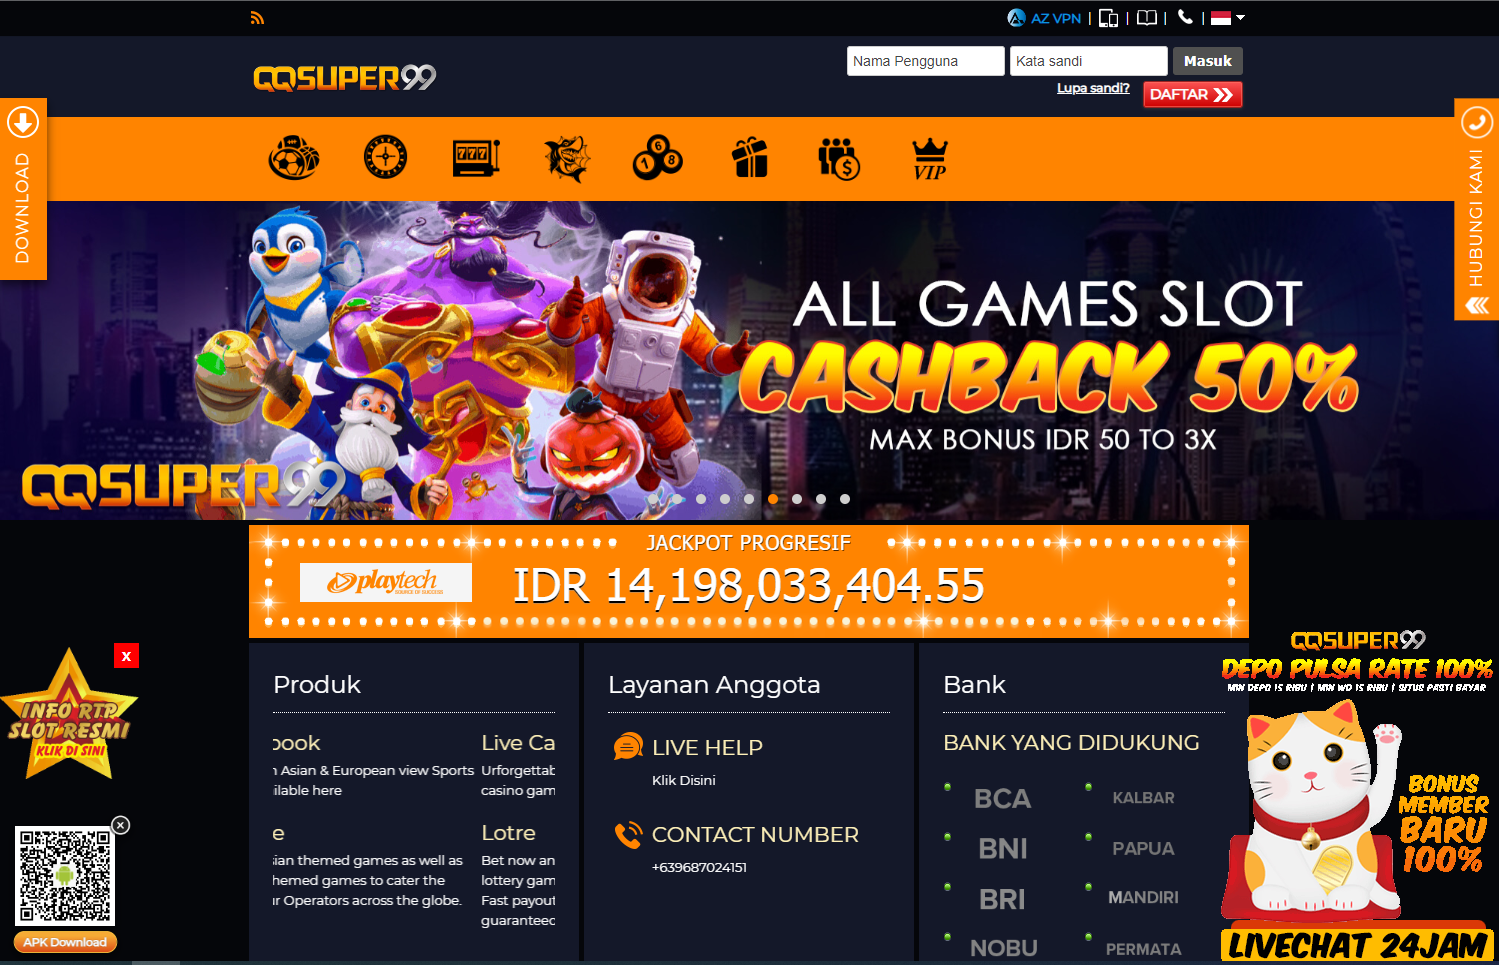 QQSUPER99 Situs Judi Slot Gacor Online Terbaik Deposit Pulsa di Indonesia